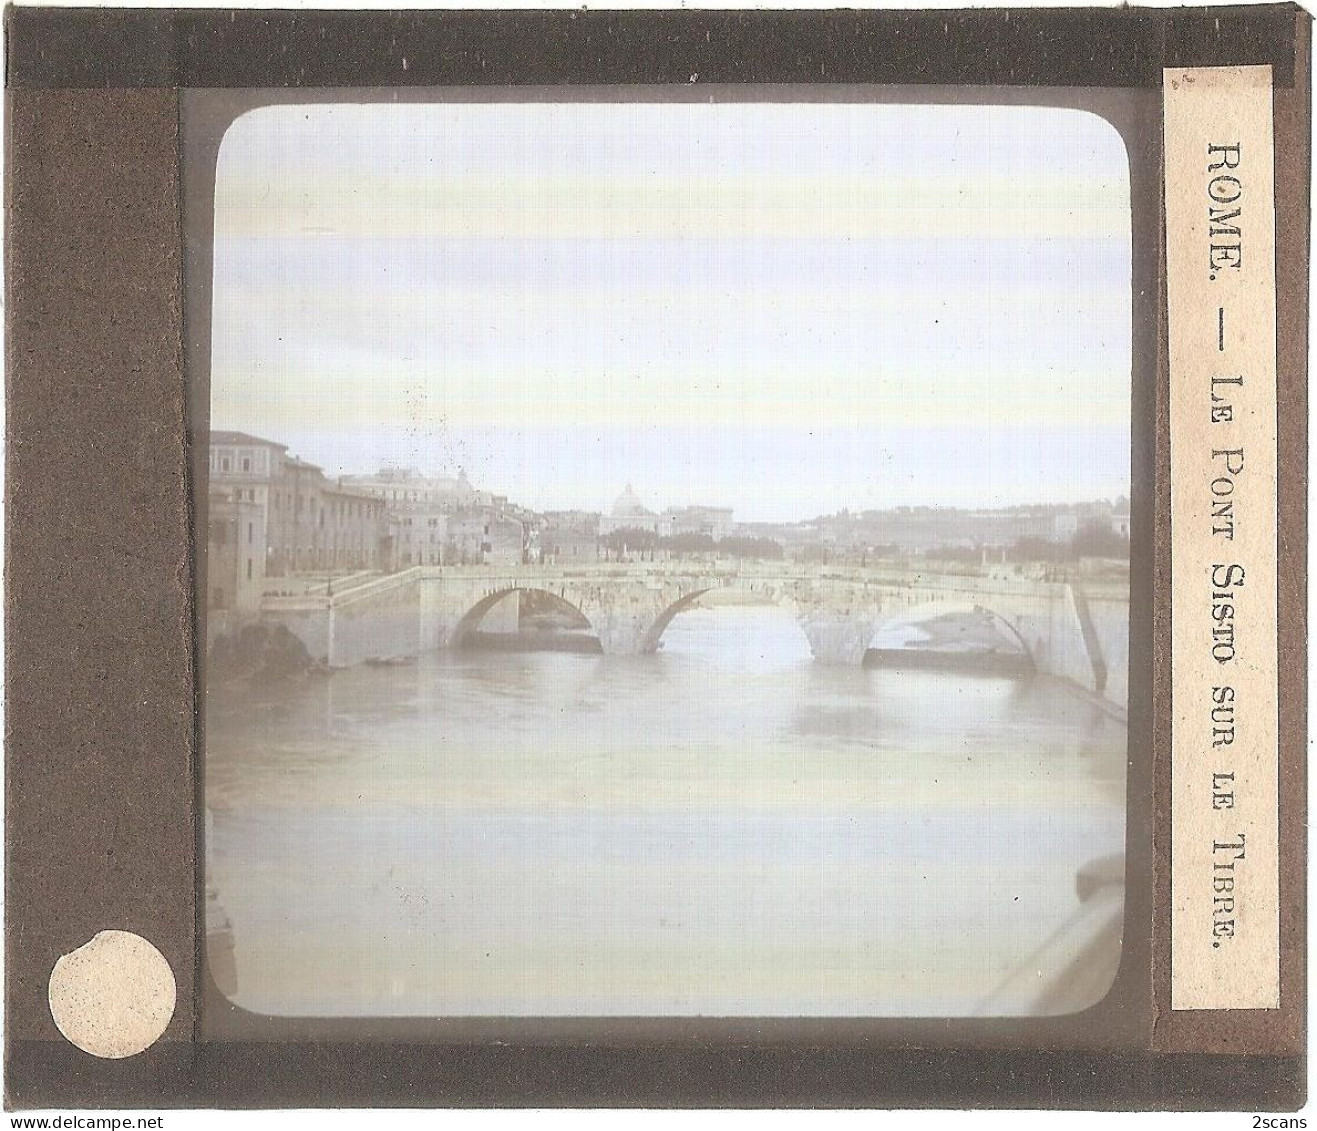 Italie - ROME - ROMA - Plaque De Verre Ancienne (1906) - Le Pont Sisto Sur Le Tibre - Pontes